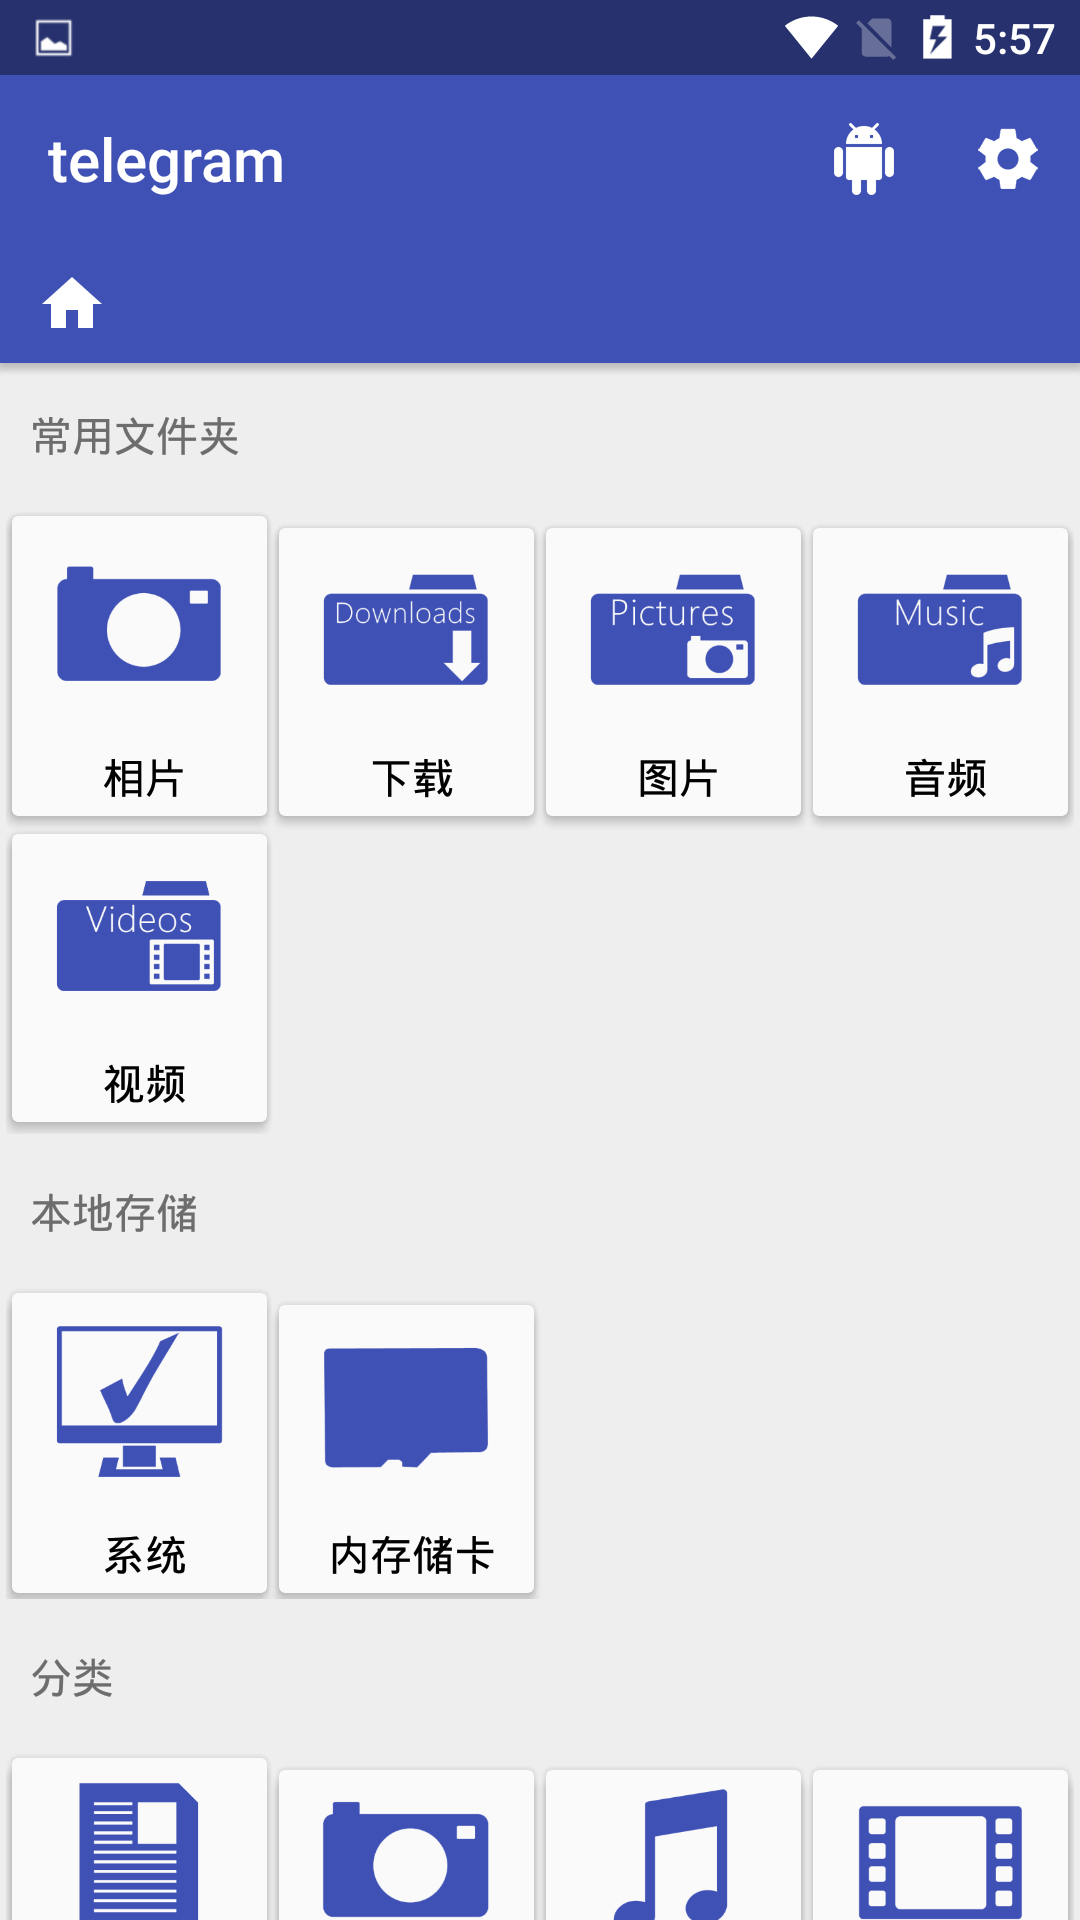 包含telegeram官网中文最新版本的词条